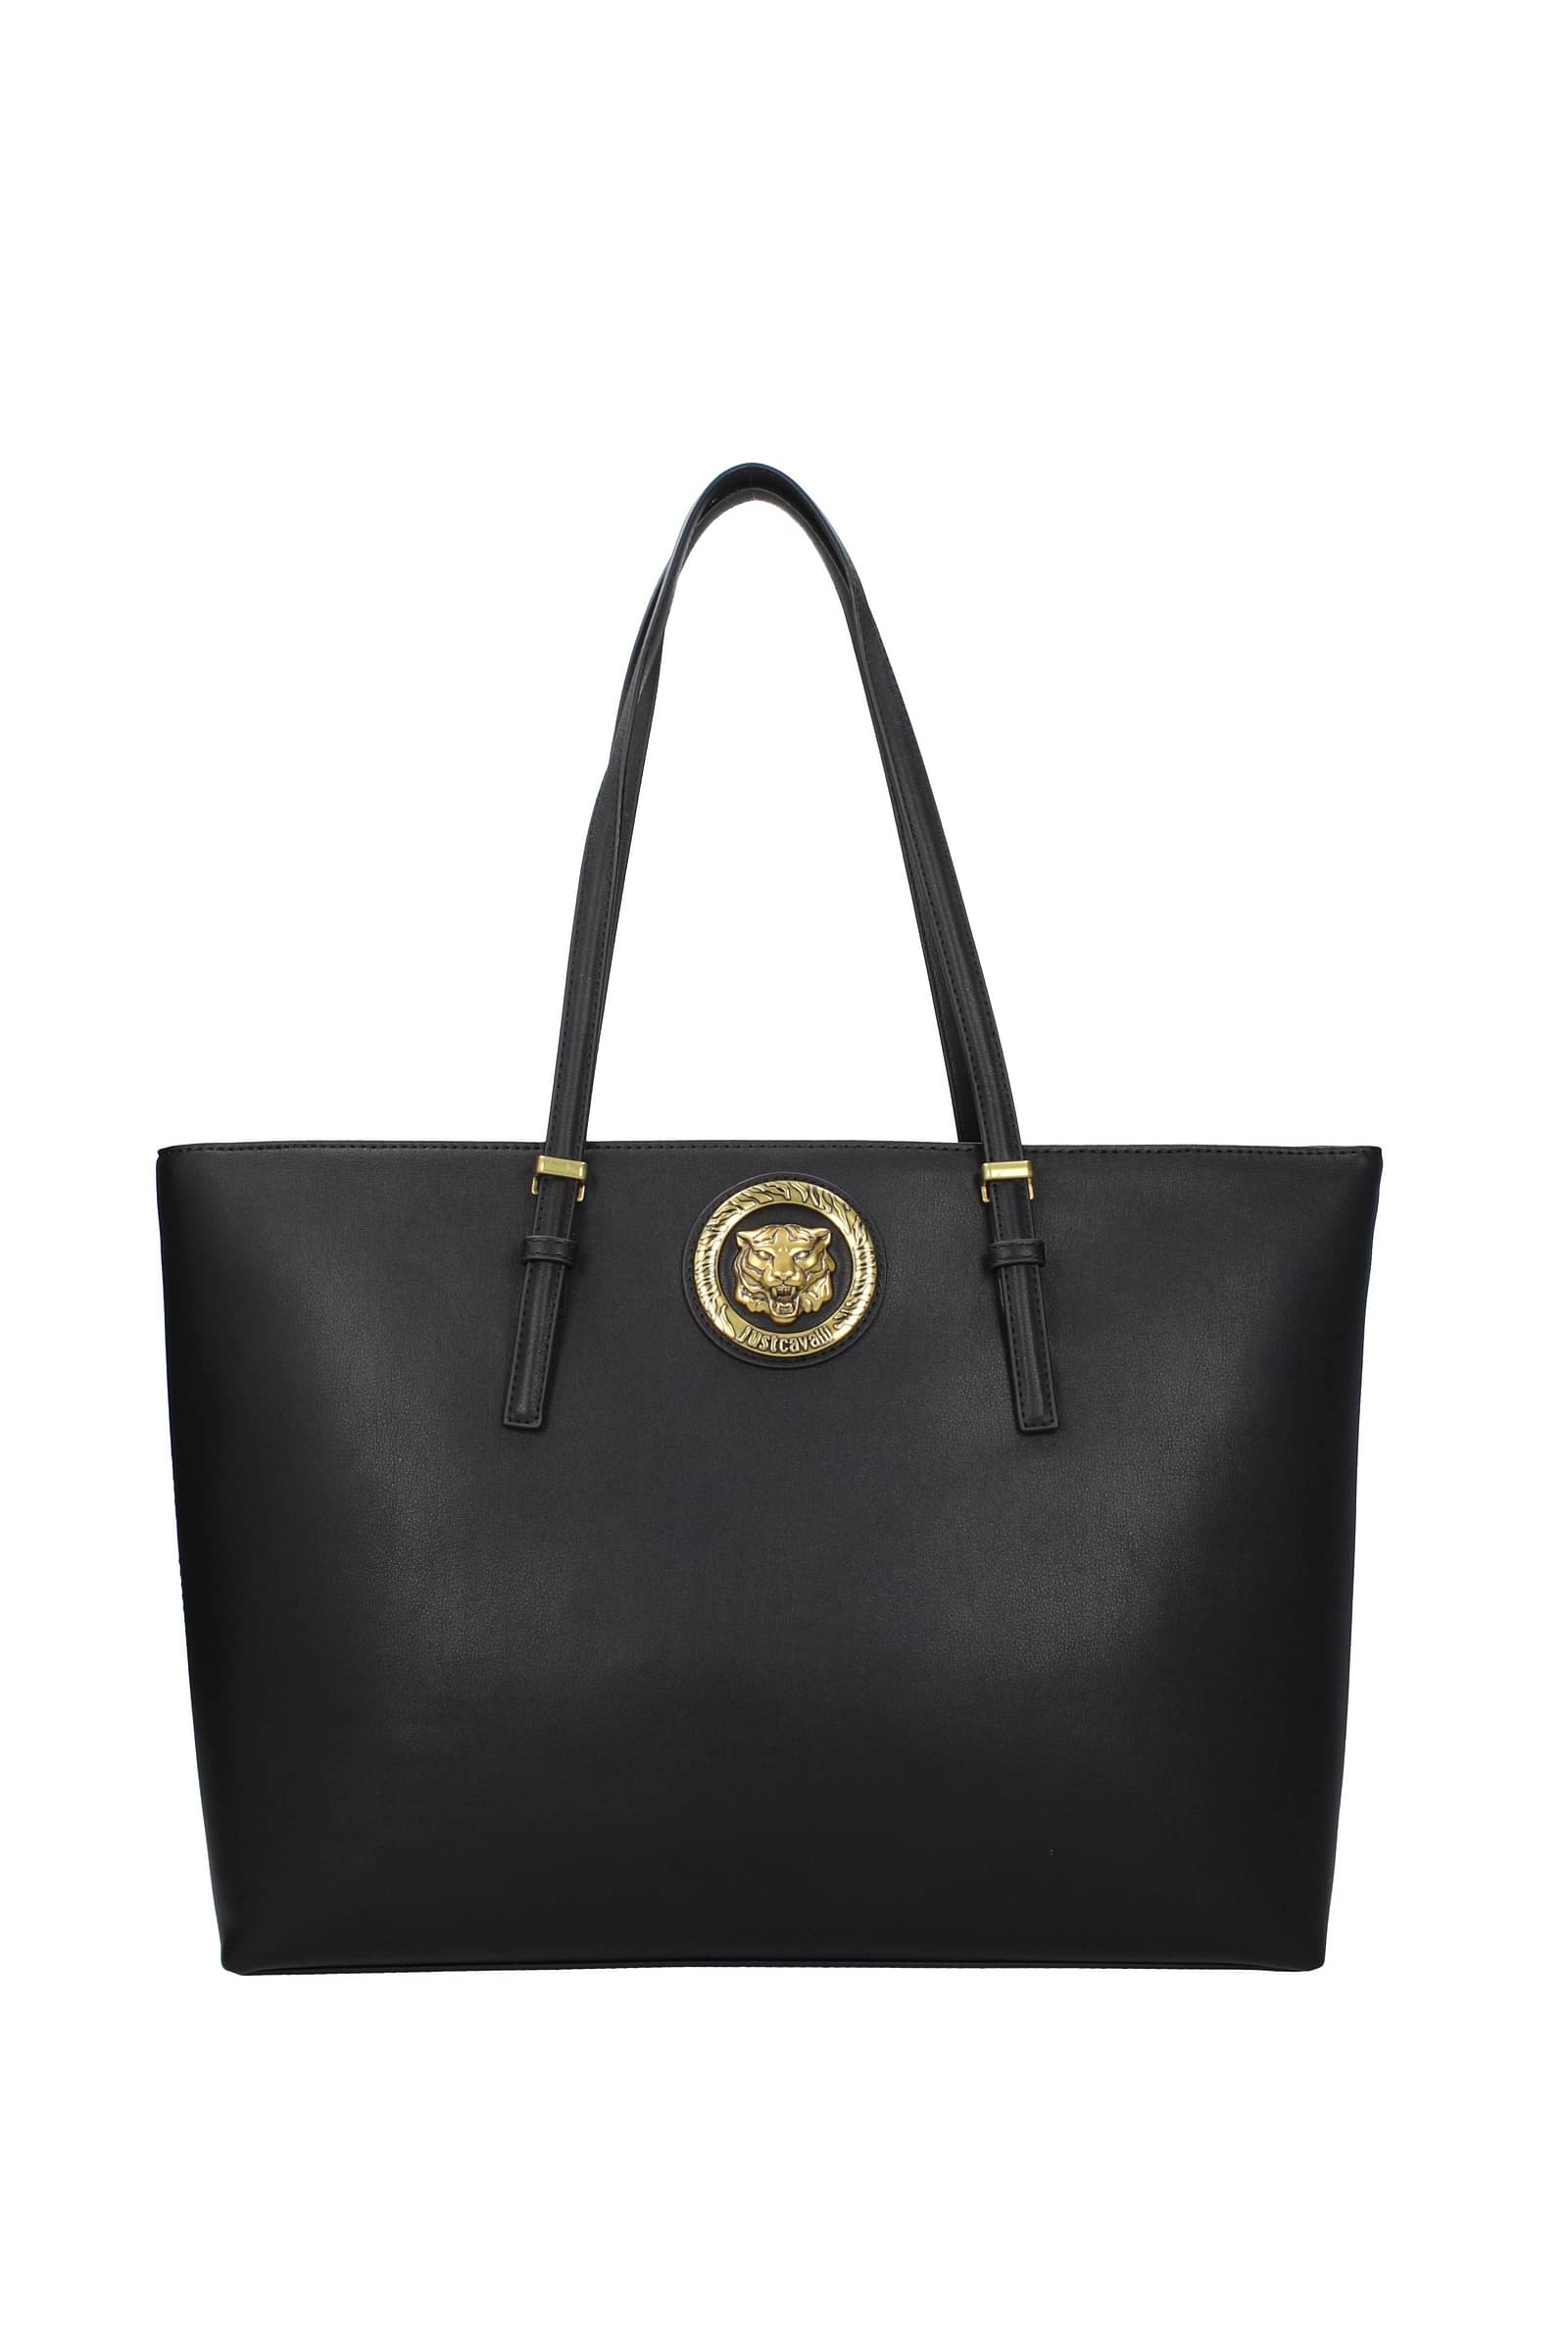 SHE Boutique - Just Cavalli bag just landed #sheboutiquecyprus | Facebook